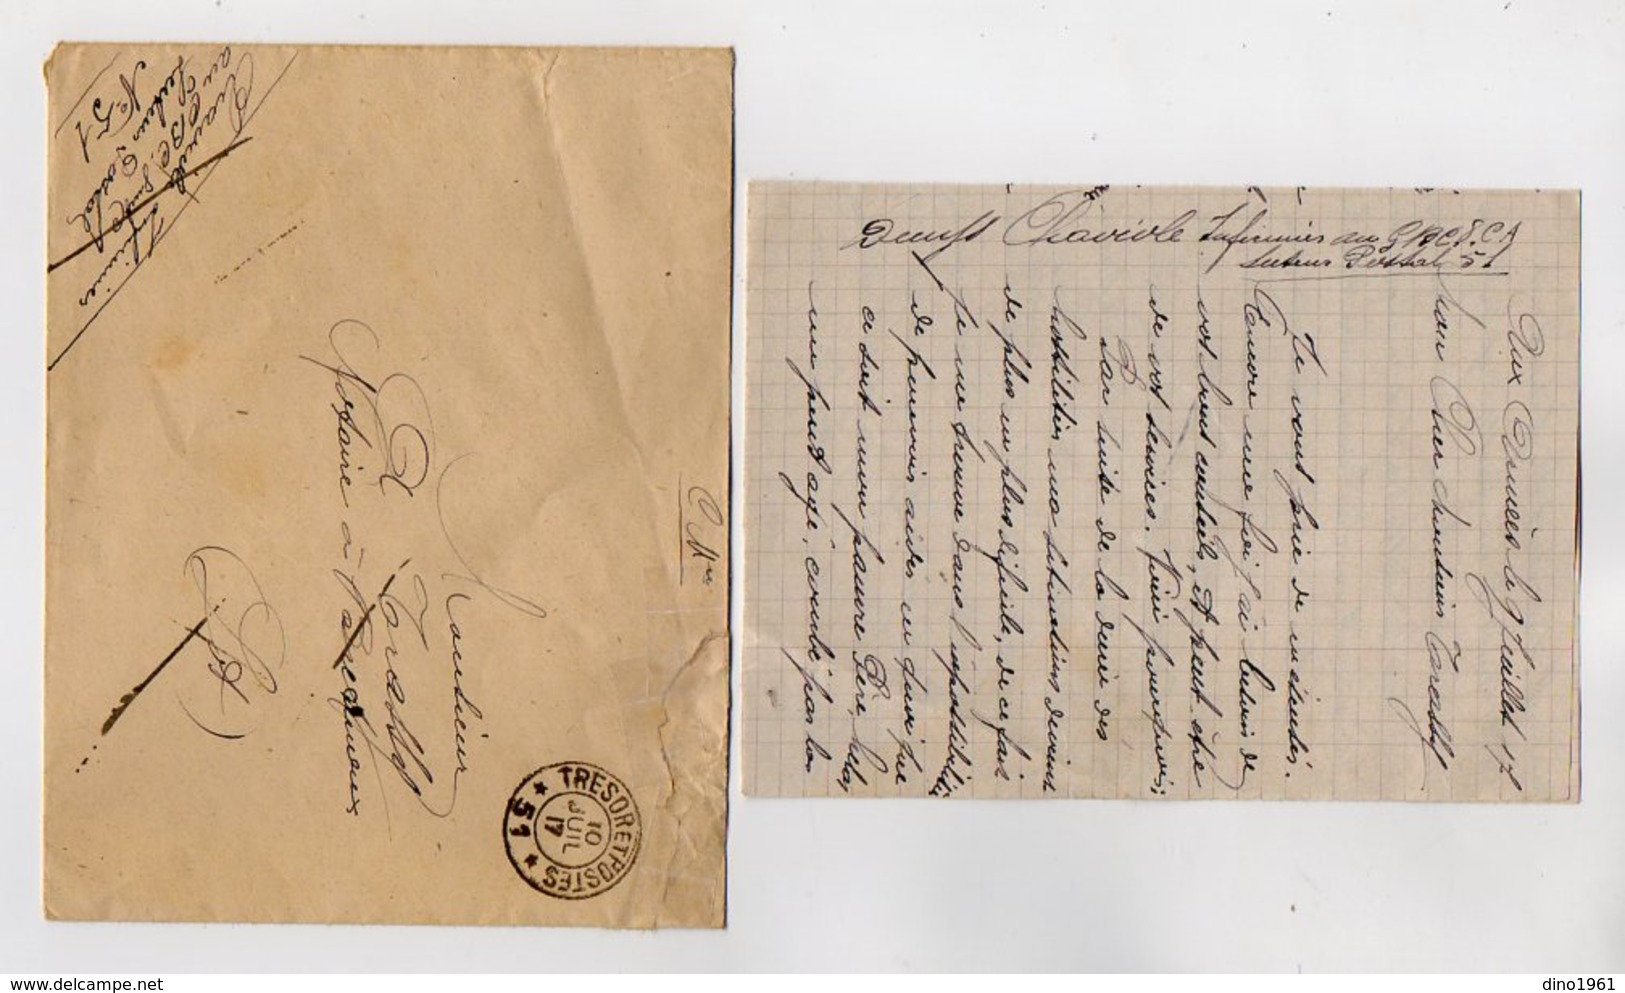 VP16.892 - MILITARIA - 1917 - Lettre Du Soldat CHAVIOLE Infirmier Au G.B.C .....Secteur Postal 51 - Documents